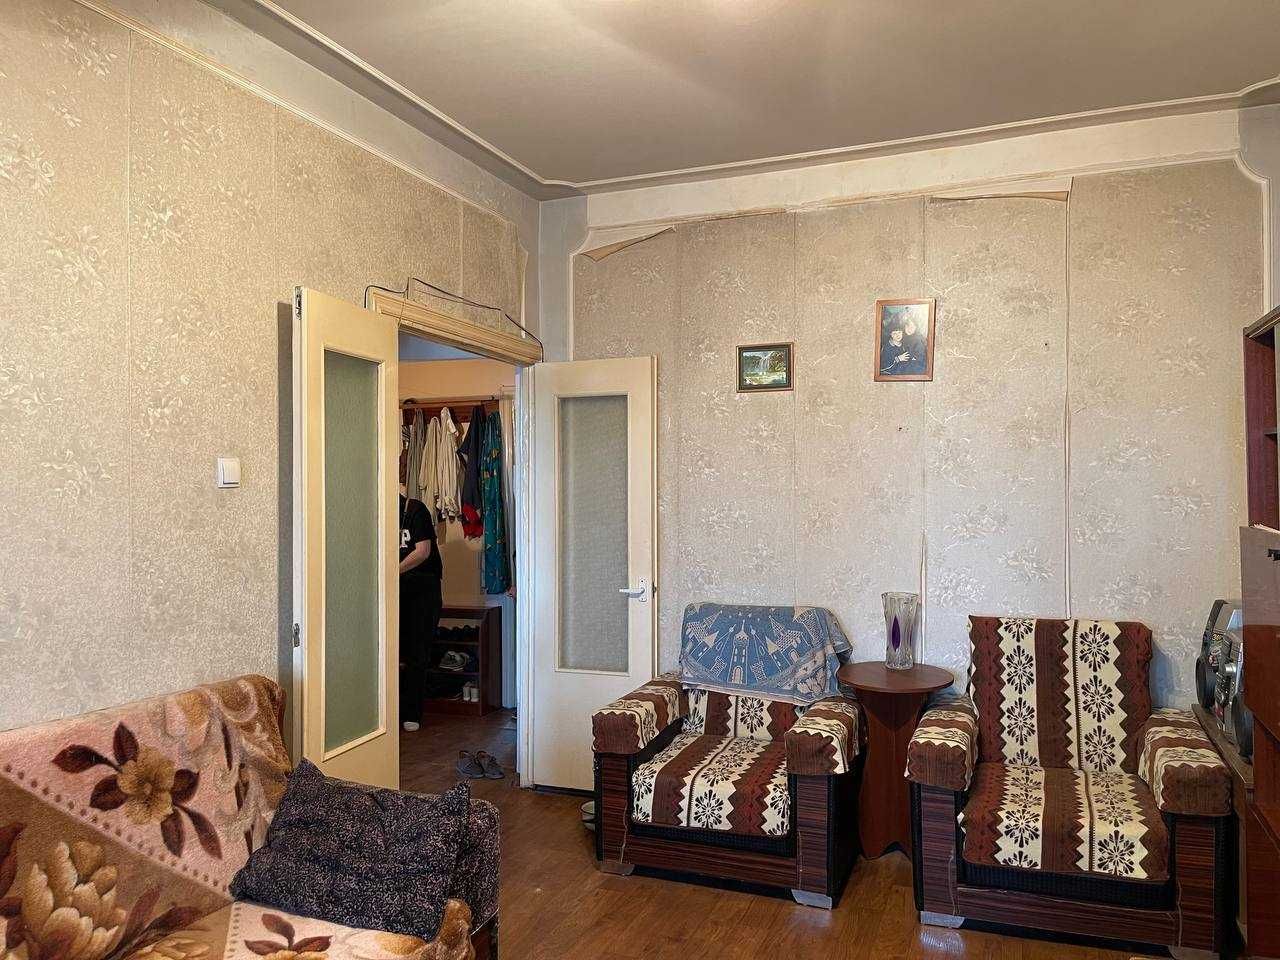 Продаётся квартира Карасув-6 2-х комнатная.